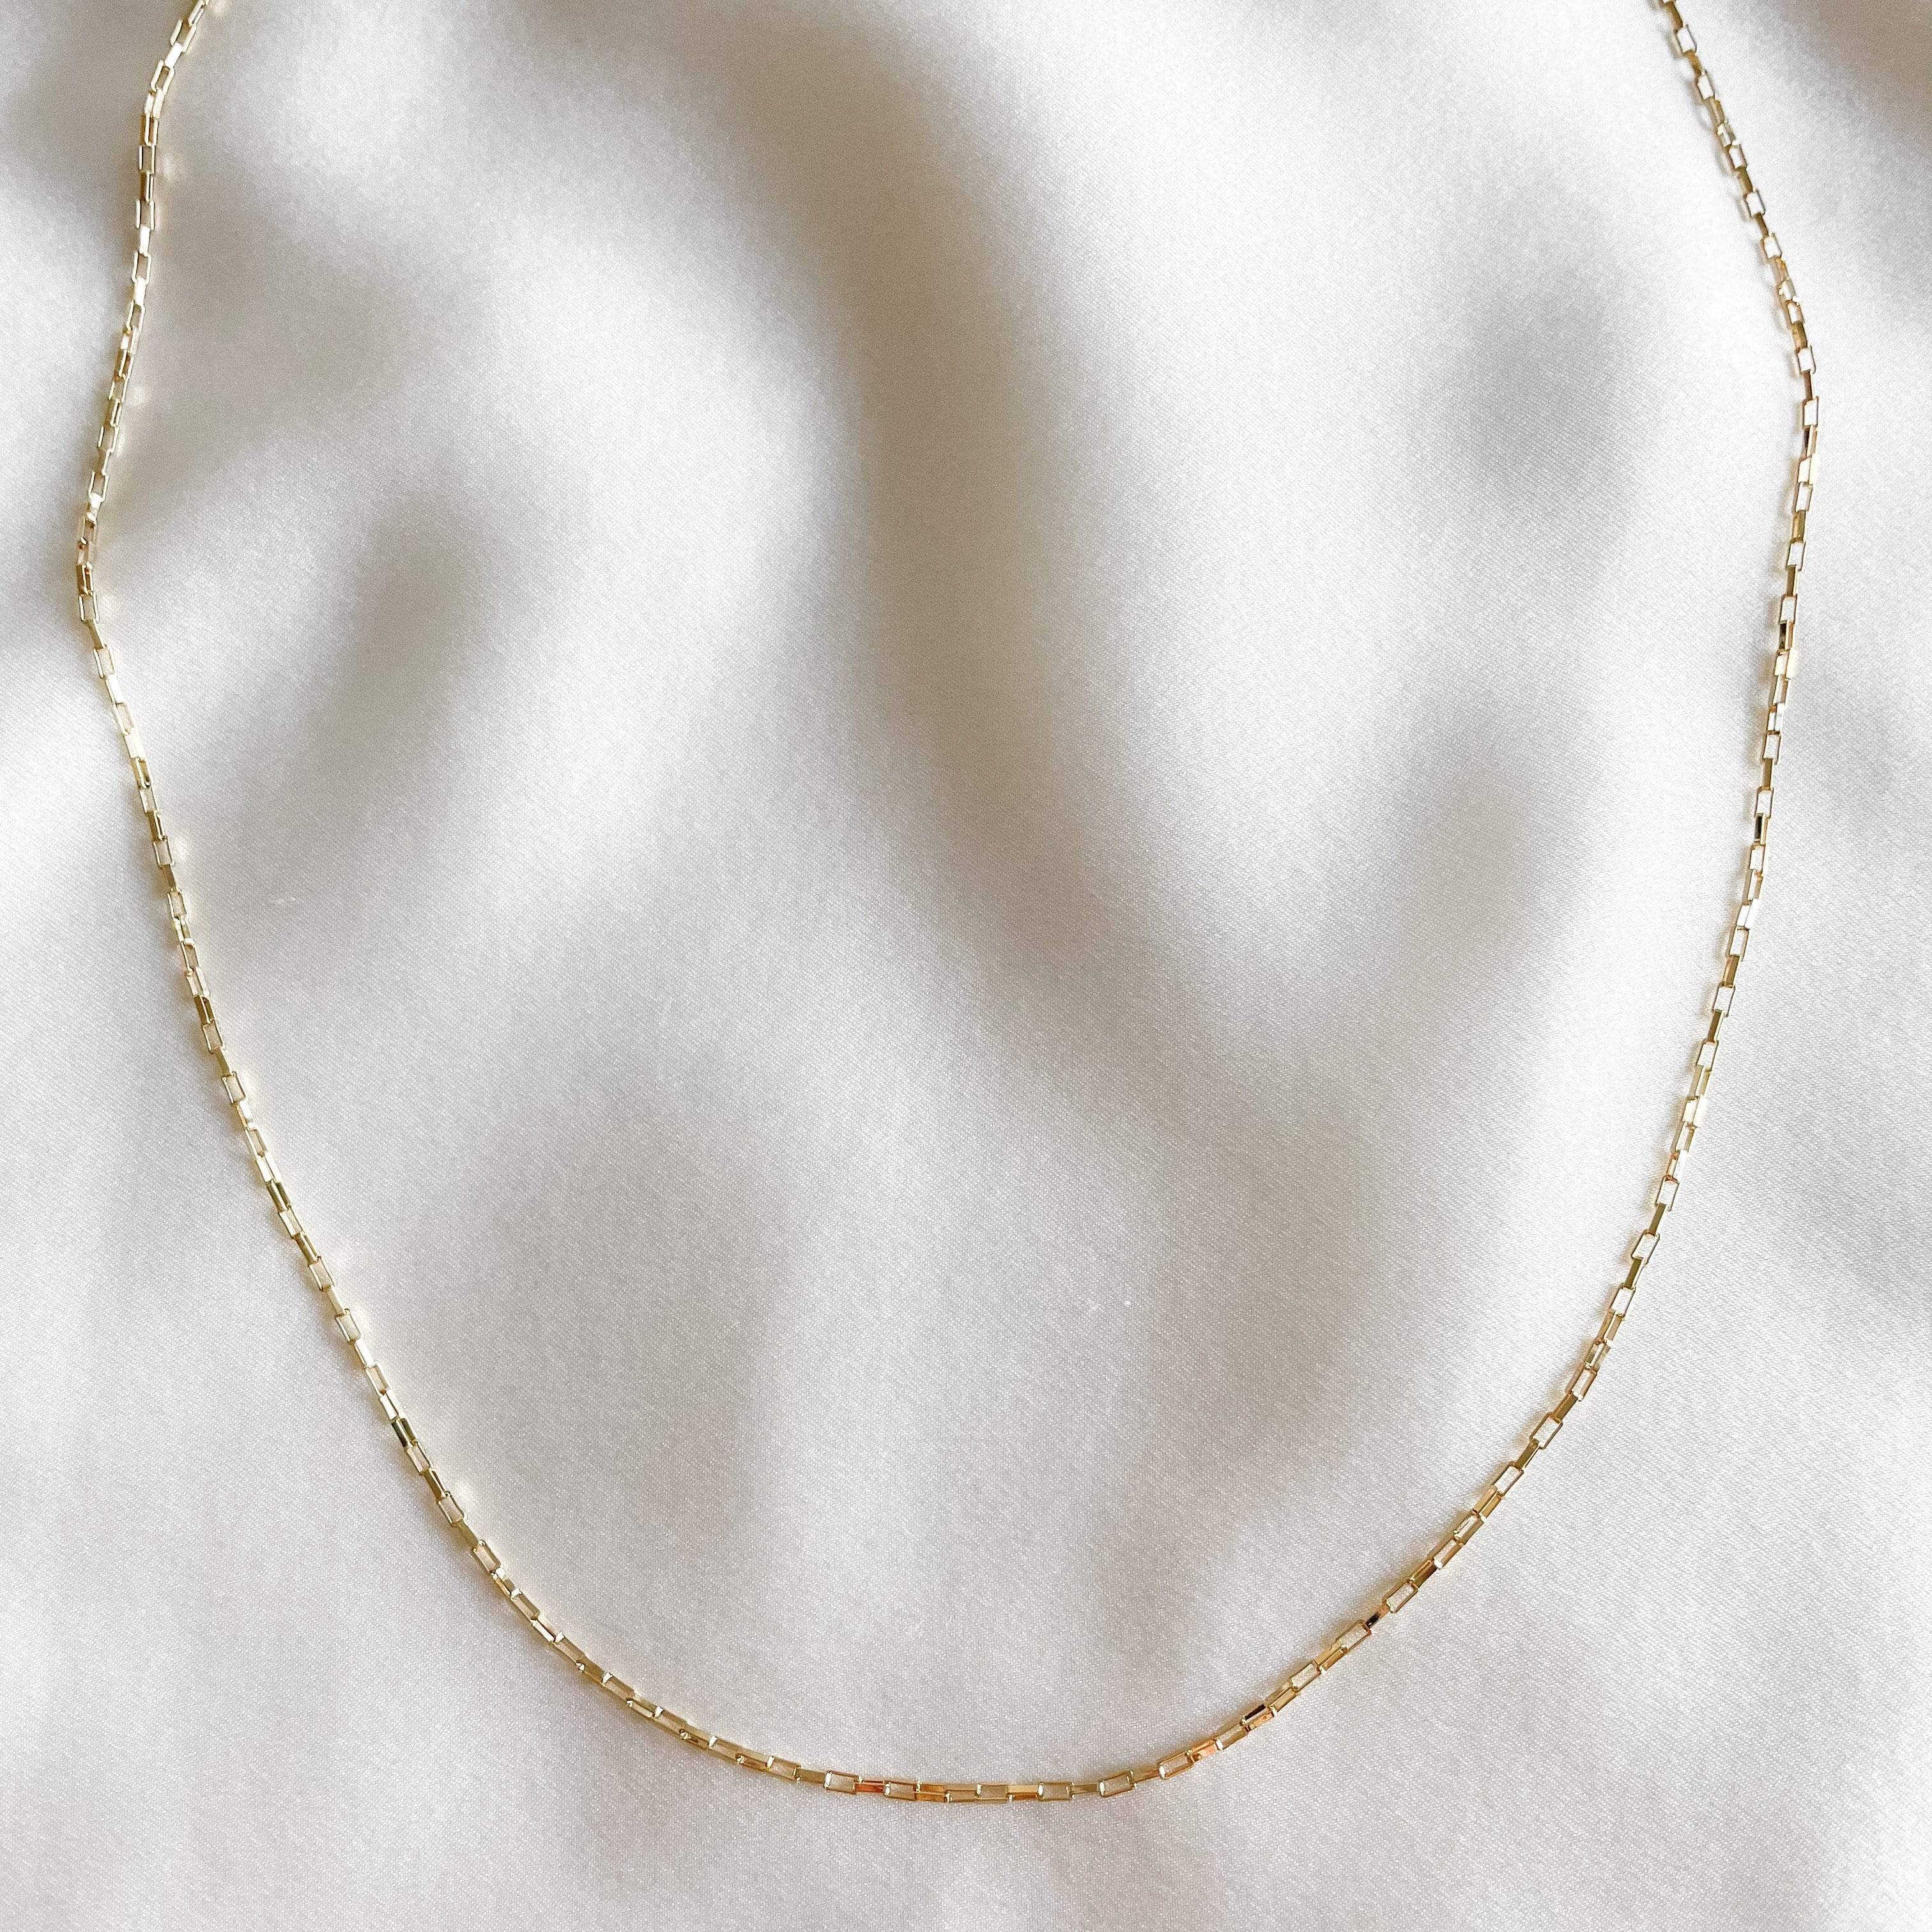 LE sensor necklace Colette Chain Necklace - 18”